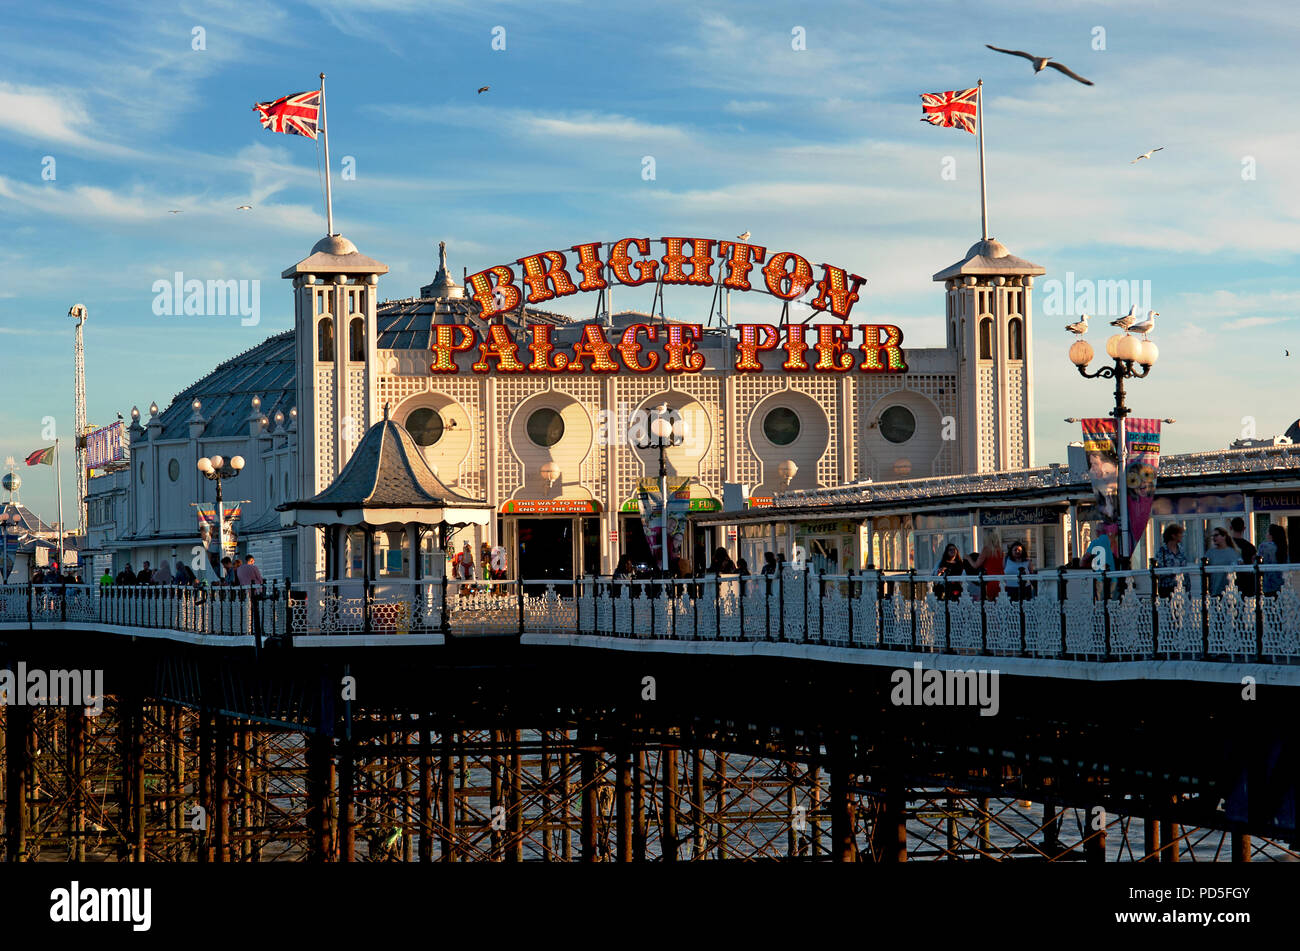 Die berühmten Brighton Palace Pier im Süden von England Küste änderte seinen Namen 2018 in Brighton Palace Pier, eine Kombination der beiden vorherigen Namen. Stockfoto